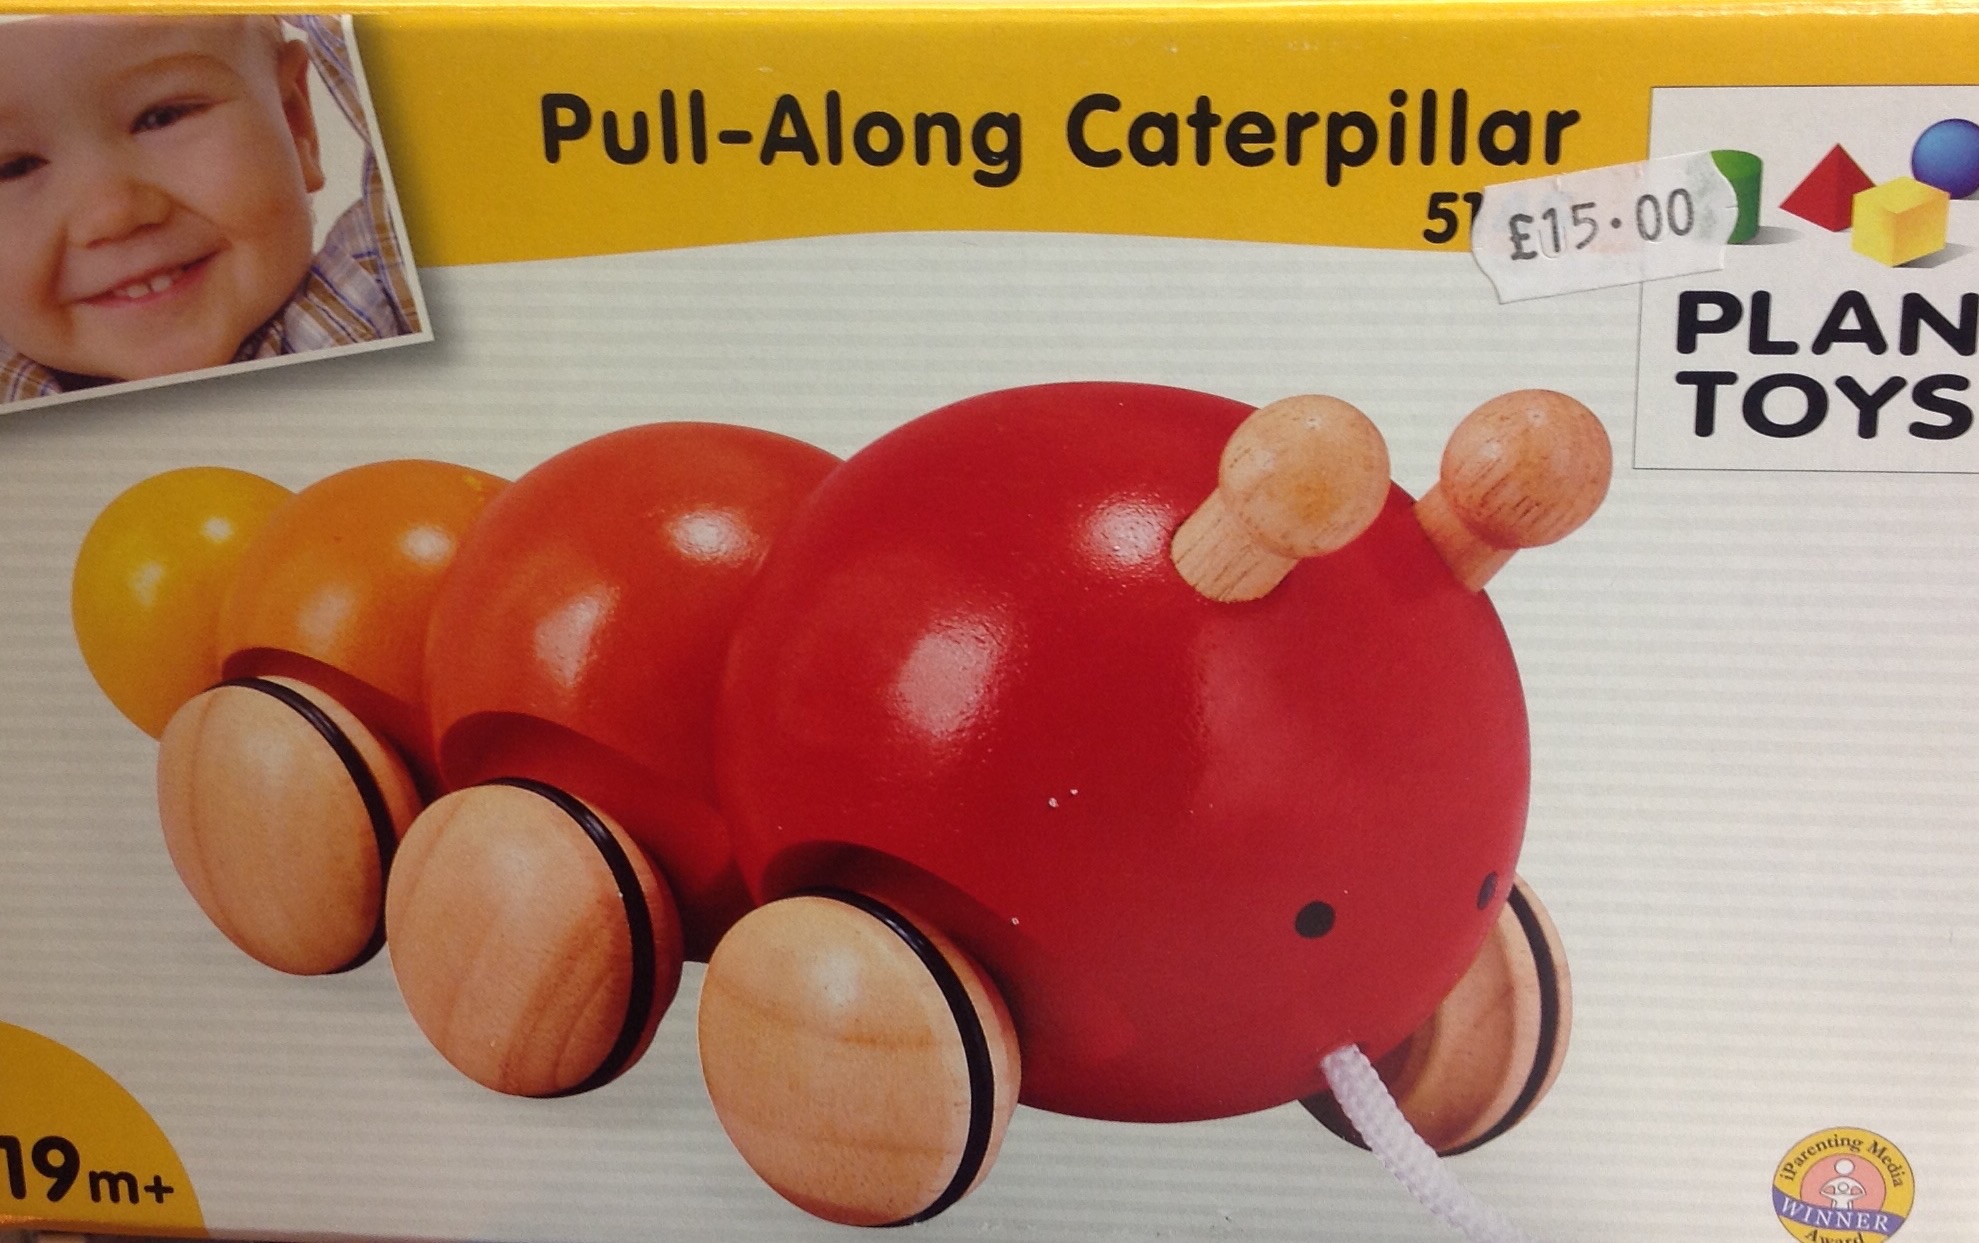 Plan Toys Caterpillar 93